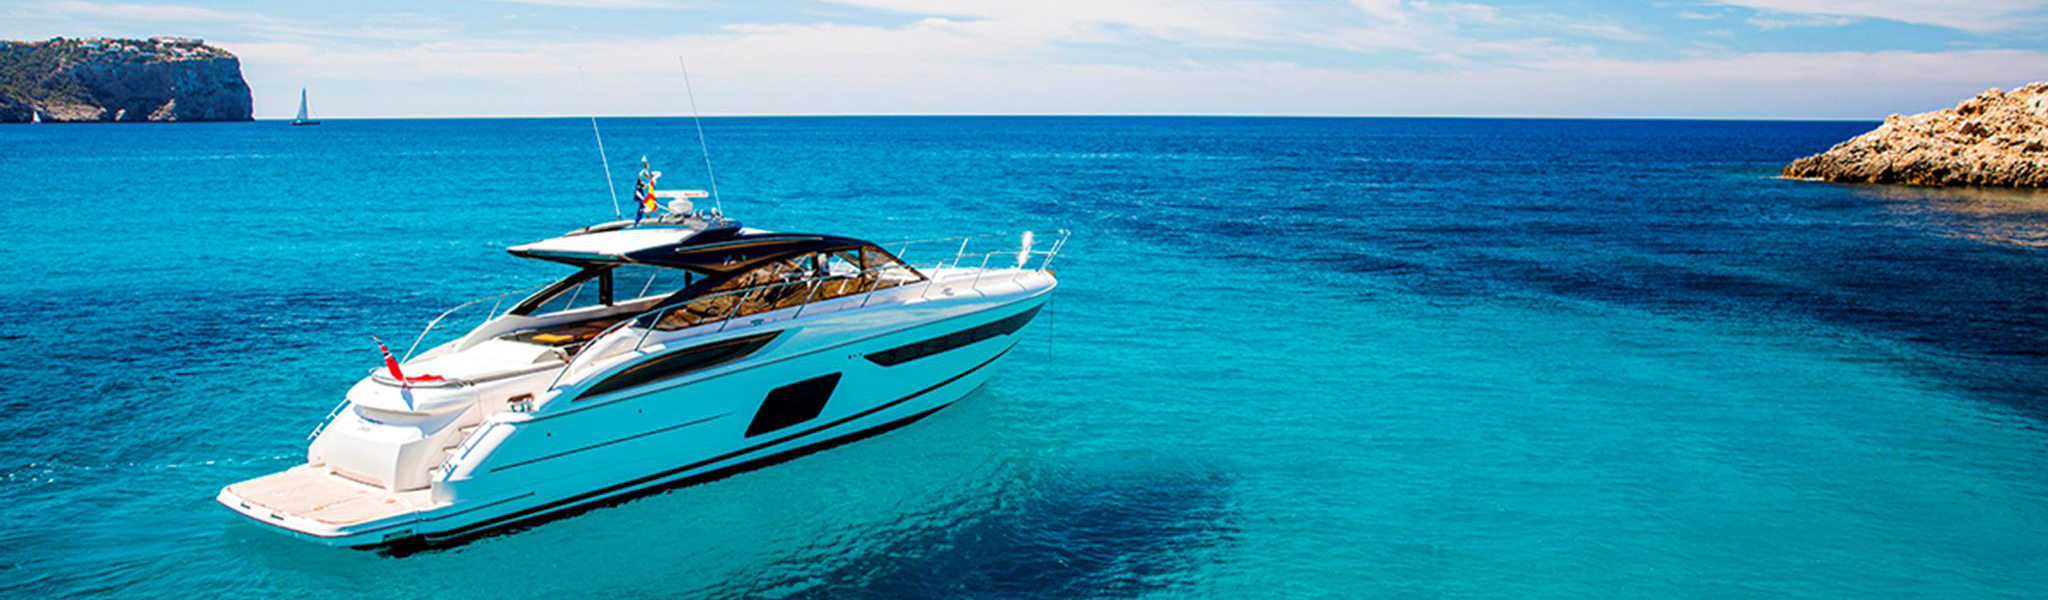 Yacht Deals Worldwide - Berths for Sale